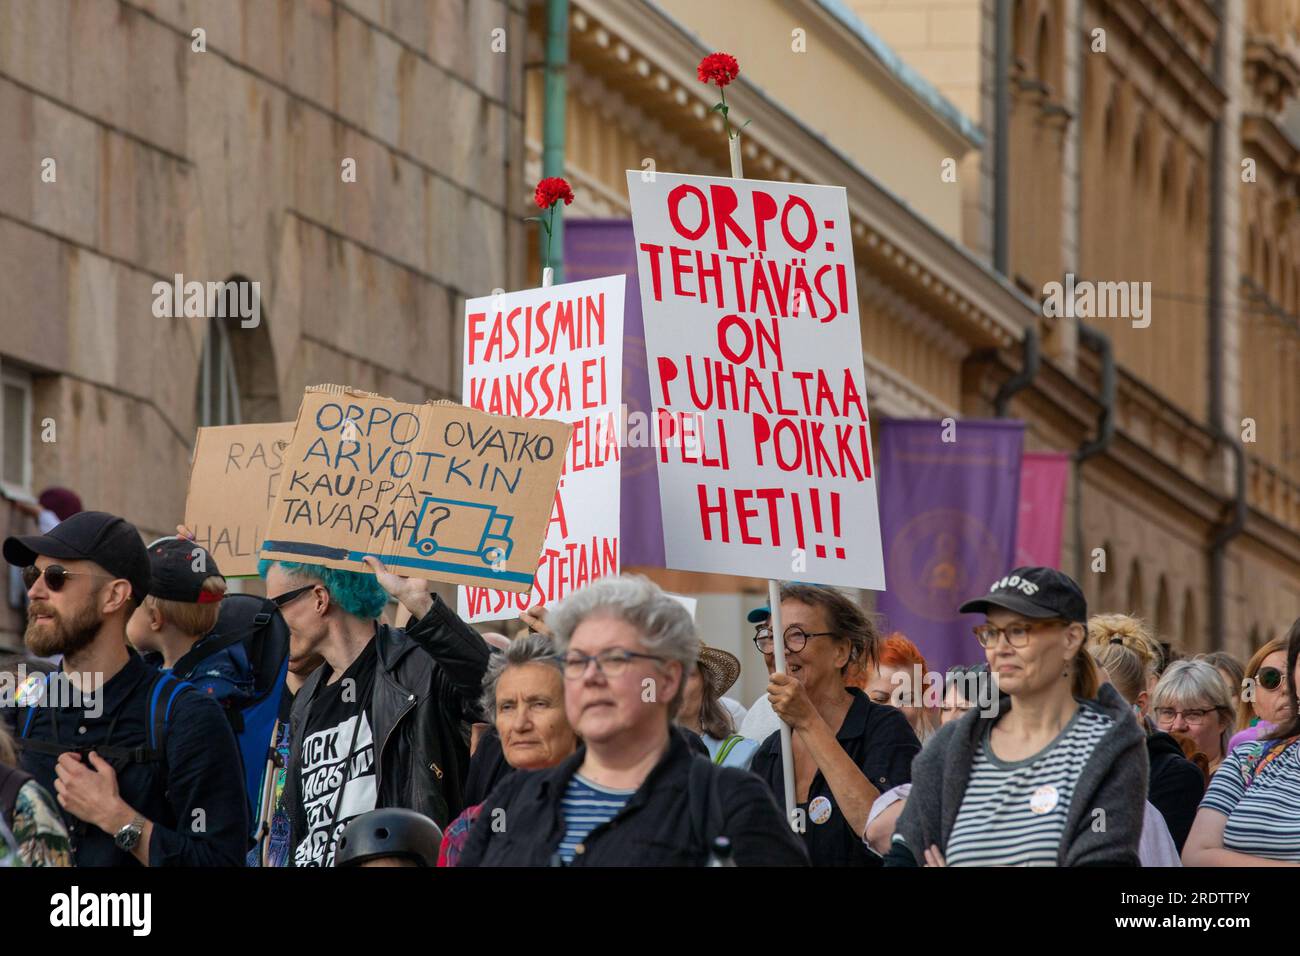 Demonstranten marschieren mit handgemachten Schildern auf Nollatoleranssi! Rasistit ulos hallituksesta Demonstration gegen die Regierung in Helsinki, Finnland Stockfoto